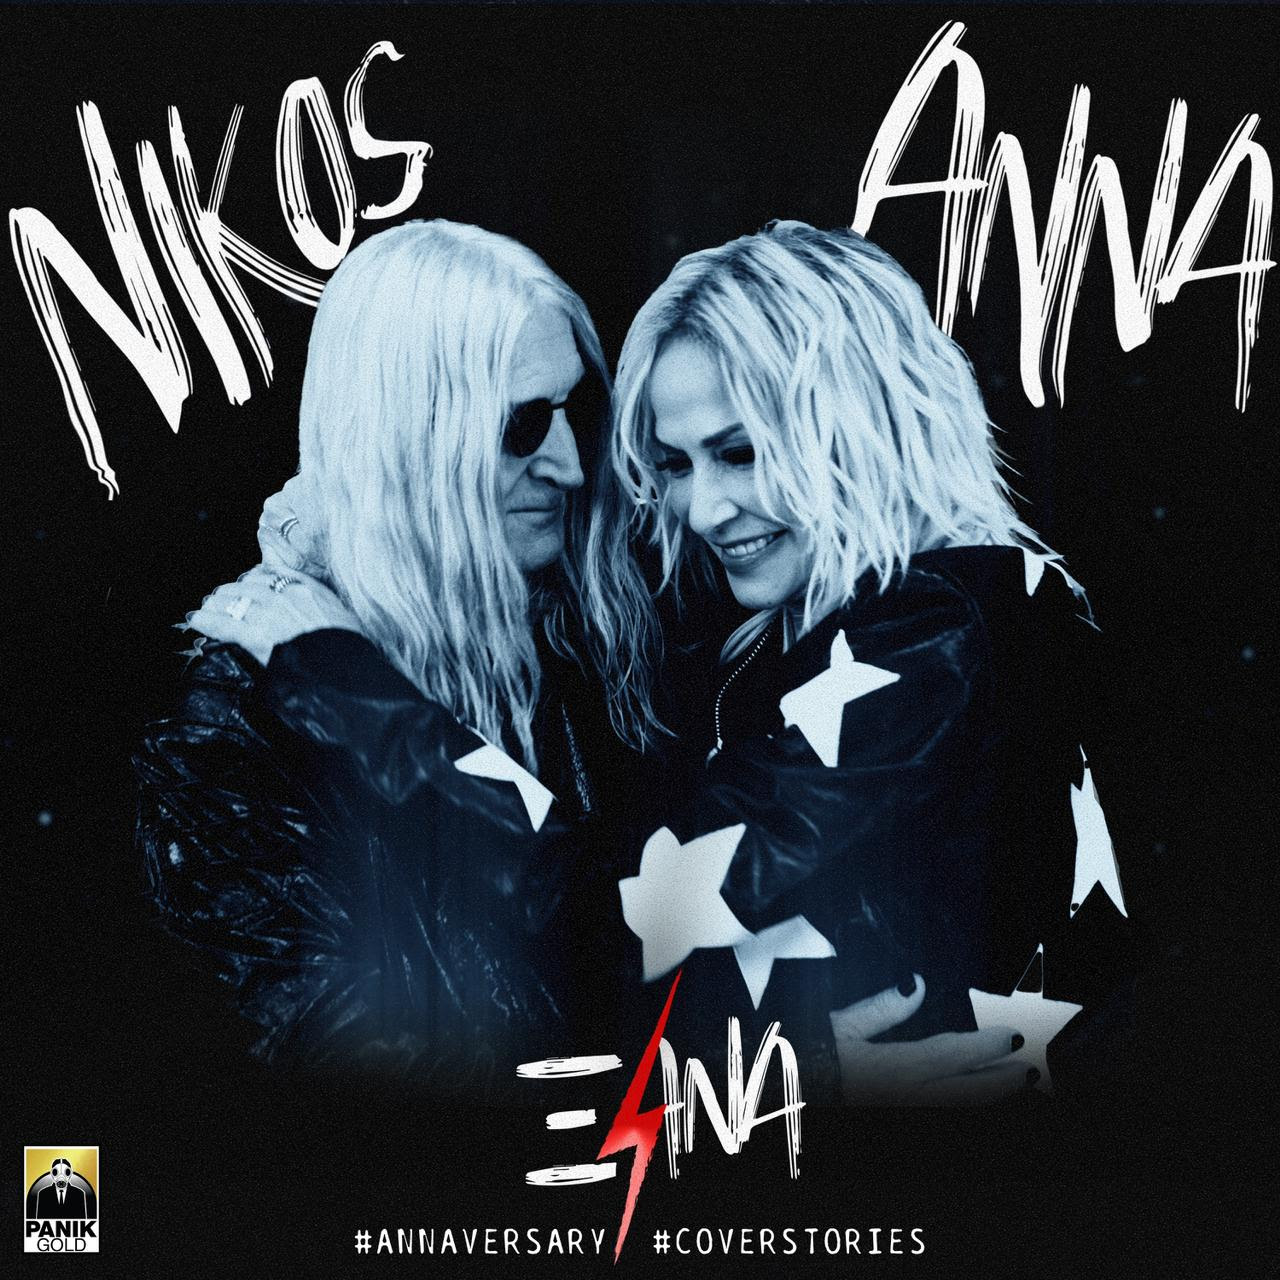 Άννα Βίσση & Νίκος Καρβέλας – «Ξανά»: Ντουέτο μετά από 20 χρόνια, στο τραγούδι του χωρισμού τους